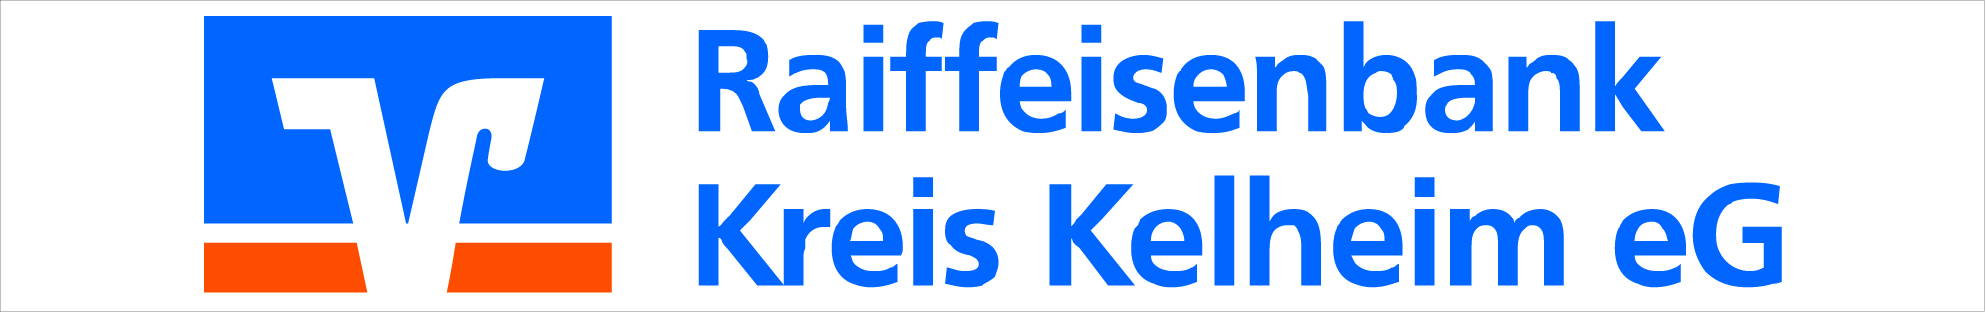 Logo Raiffeisen 2020 neu